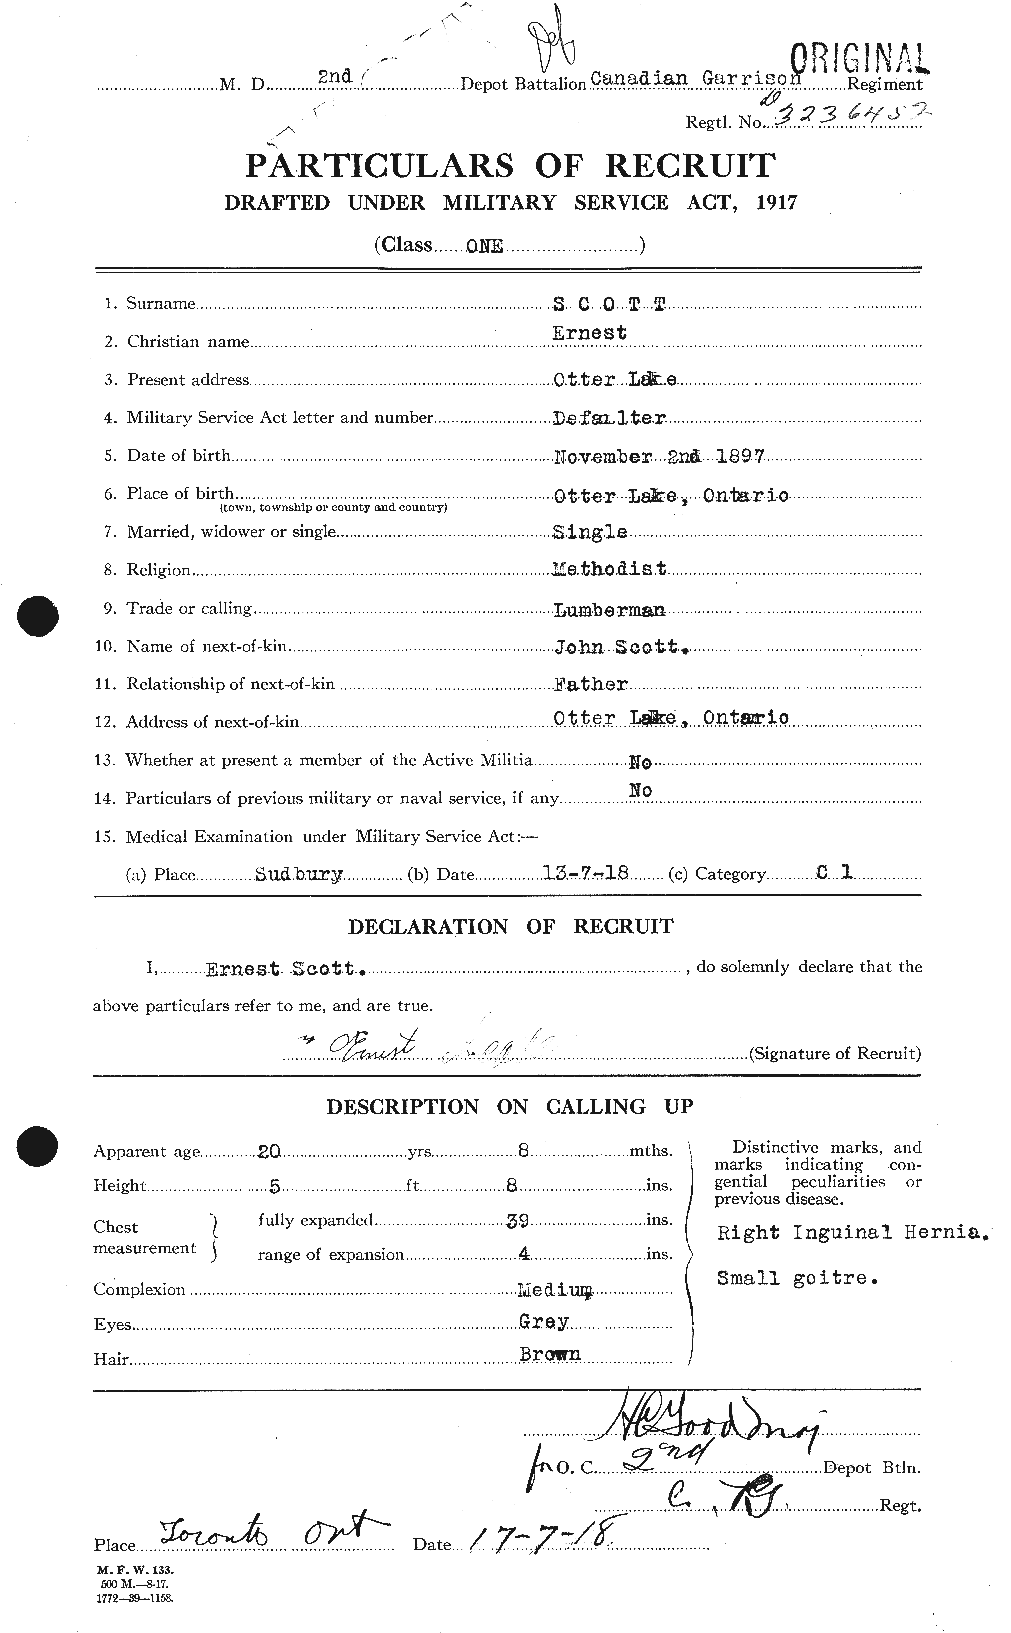 Dossiers du Personnel de la Première Guerre mondiale - CEC 085023a